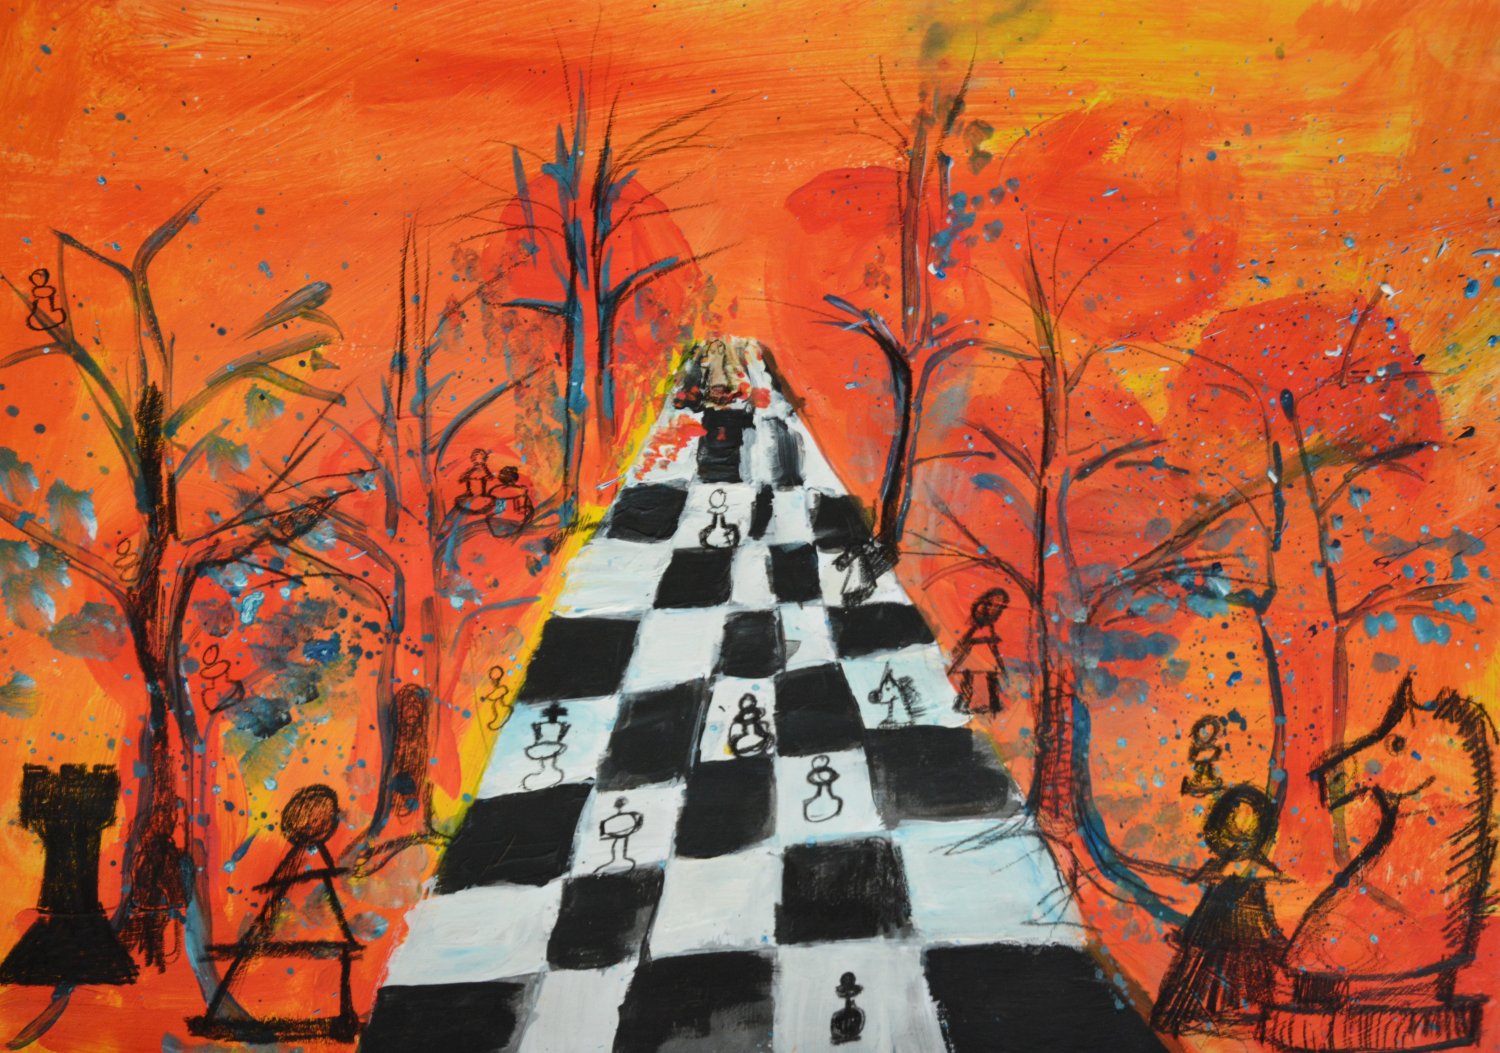 Wyróżnienie (klasy SP 0-IV). Dominika Parkitna Tytuł  "Jesienny spacer”
Niesamowite ogniste kolory, pełne ekspresji przedstawienie gry w szachy. Na obrazku dominuje pomarańcz. Jest pole do gry oraz figury szachowe w otoczeniu drzew.